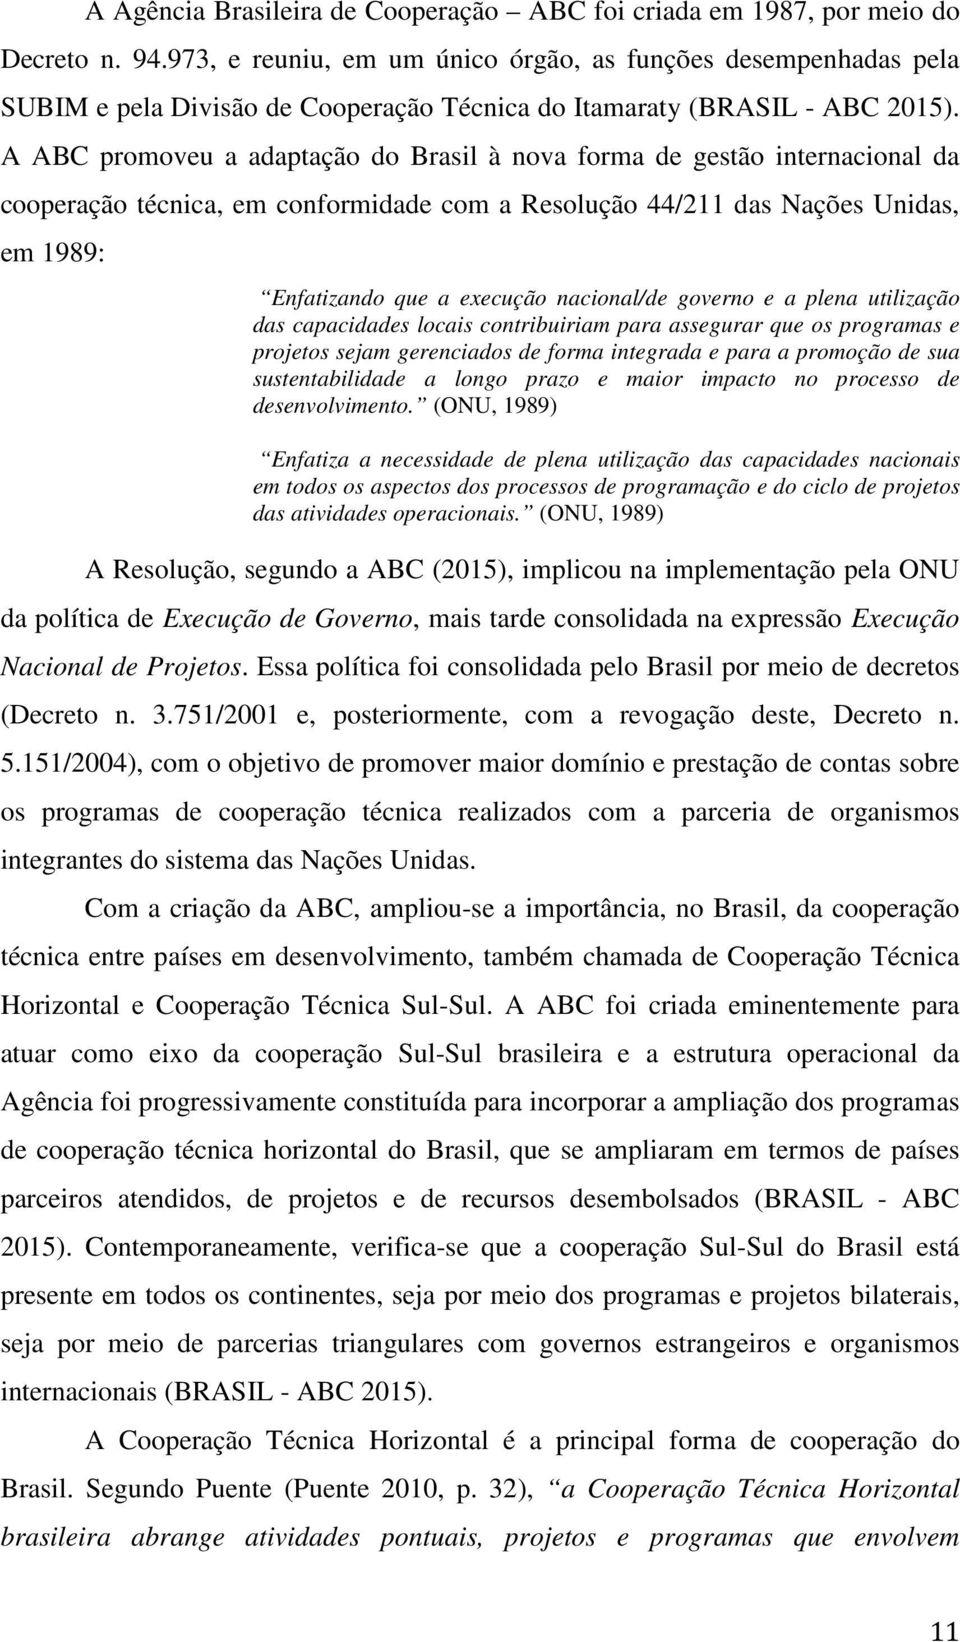 A ABC promoveu a adaptação do Brasil à nova forma de gestão internacional da cooperação técnica, em conformidade com a Resolução 44/211 das Nações Unidas, em 1989: Enfatizando que a execução